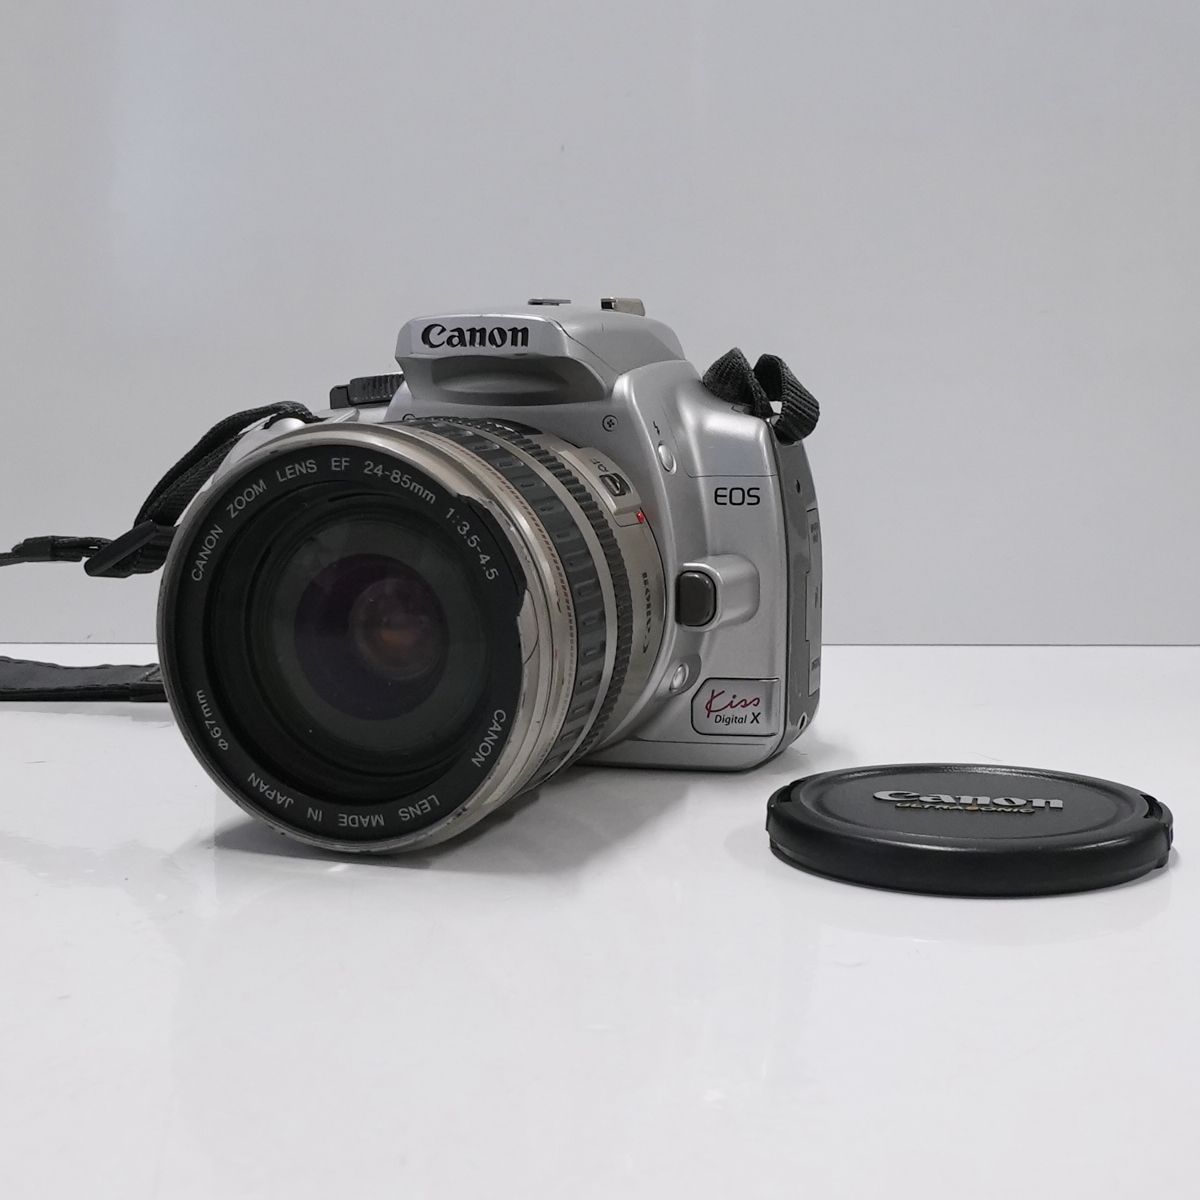 Canon EOS Kiss Digital X + EF24-85mm F3.5-4.5 USED品 APS-C デジタル一眼レフ 標準ズームレンズ 完動品  CP3162